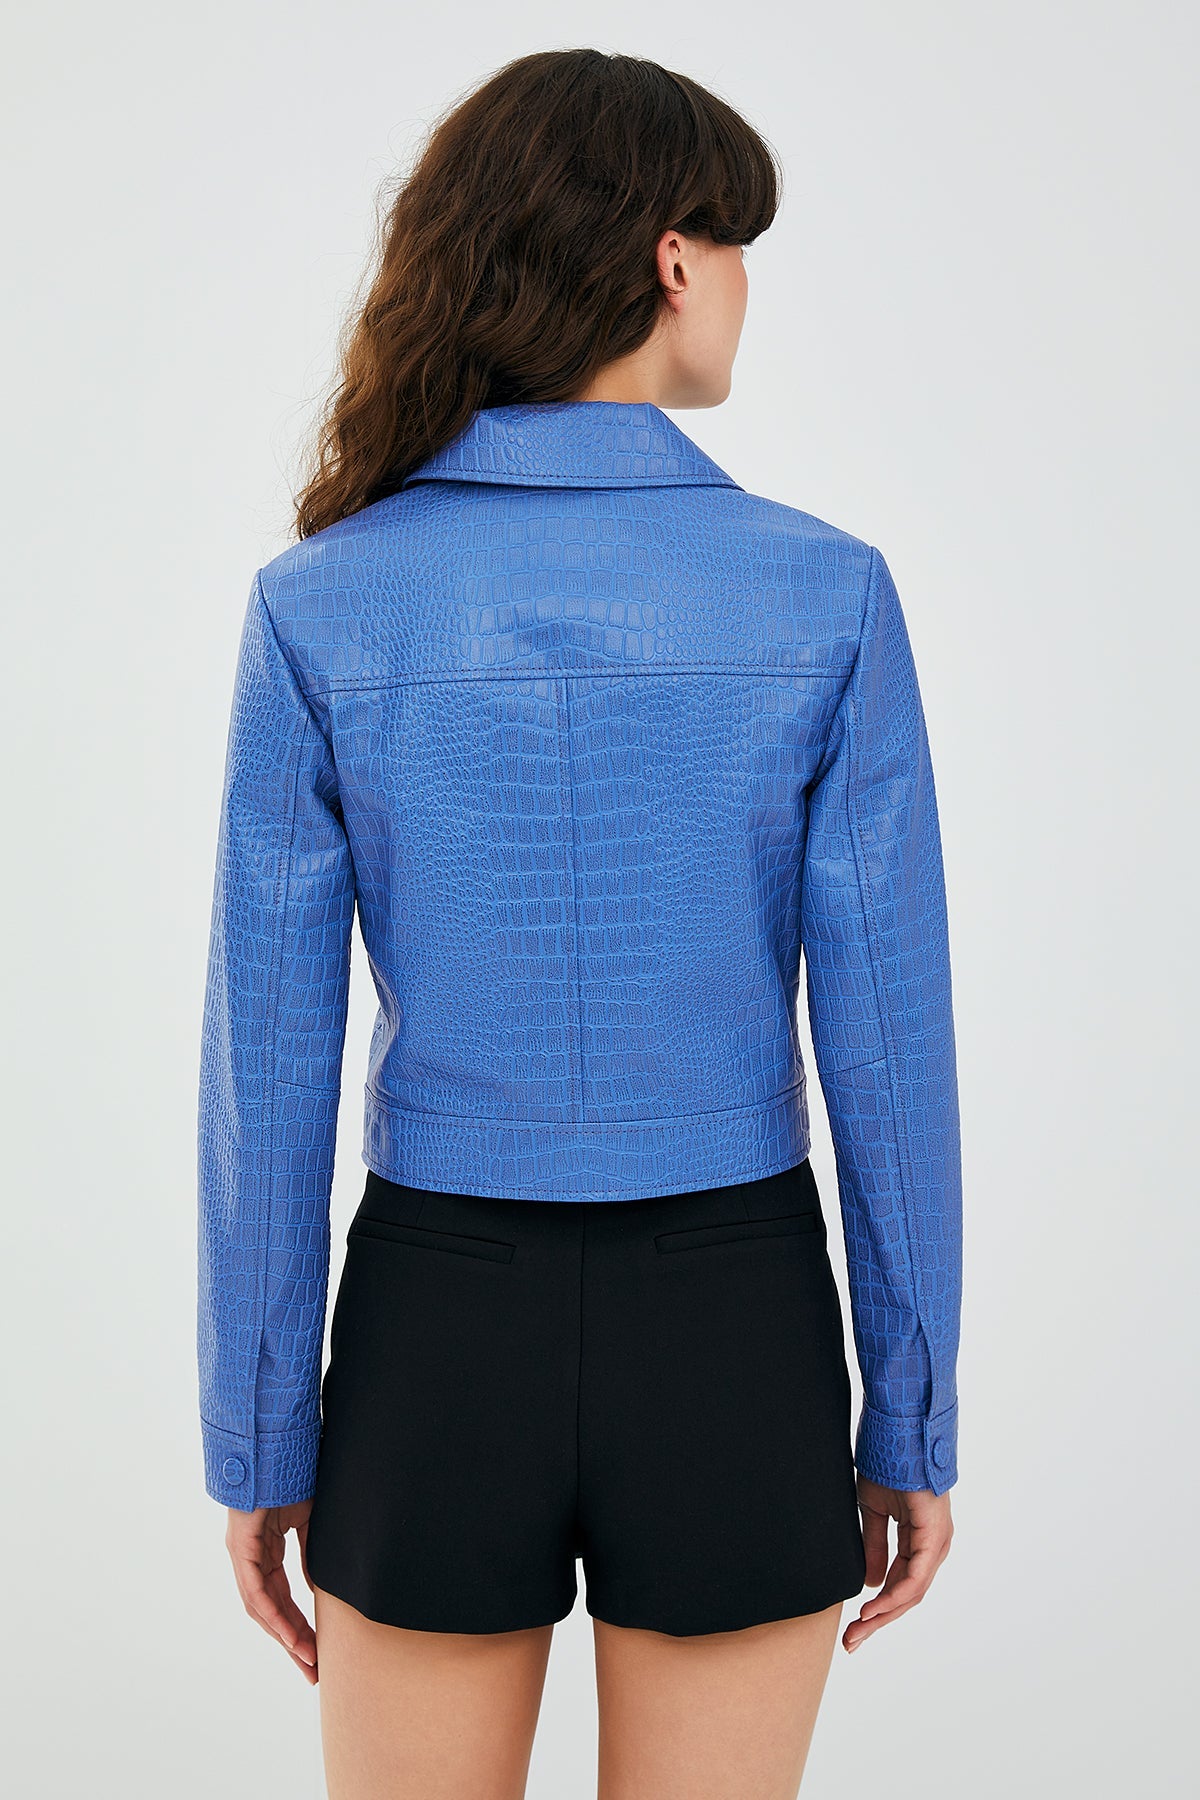 Tina Women's Blue Short Leather Jacket